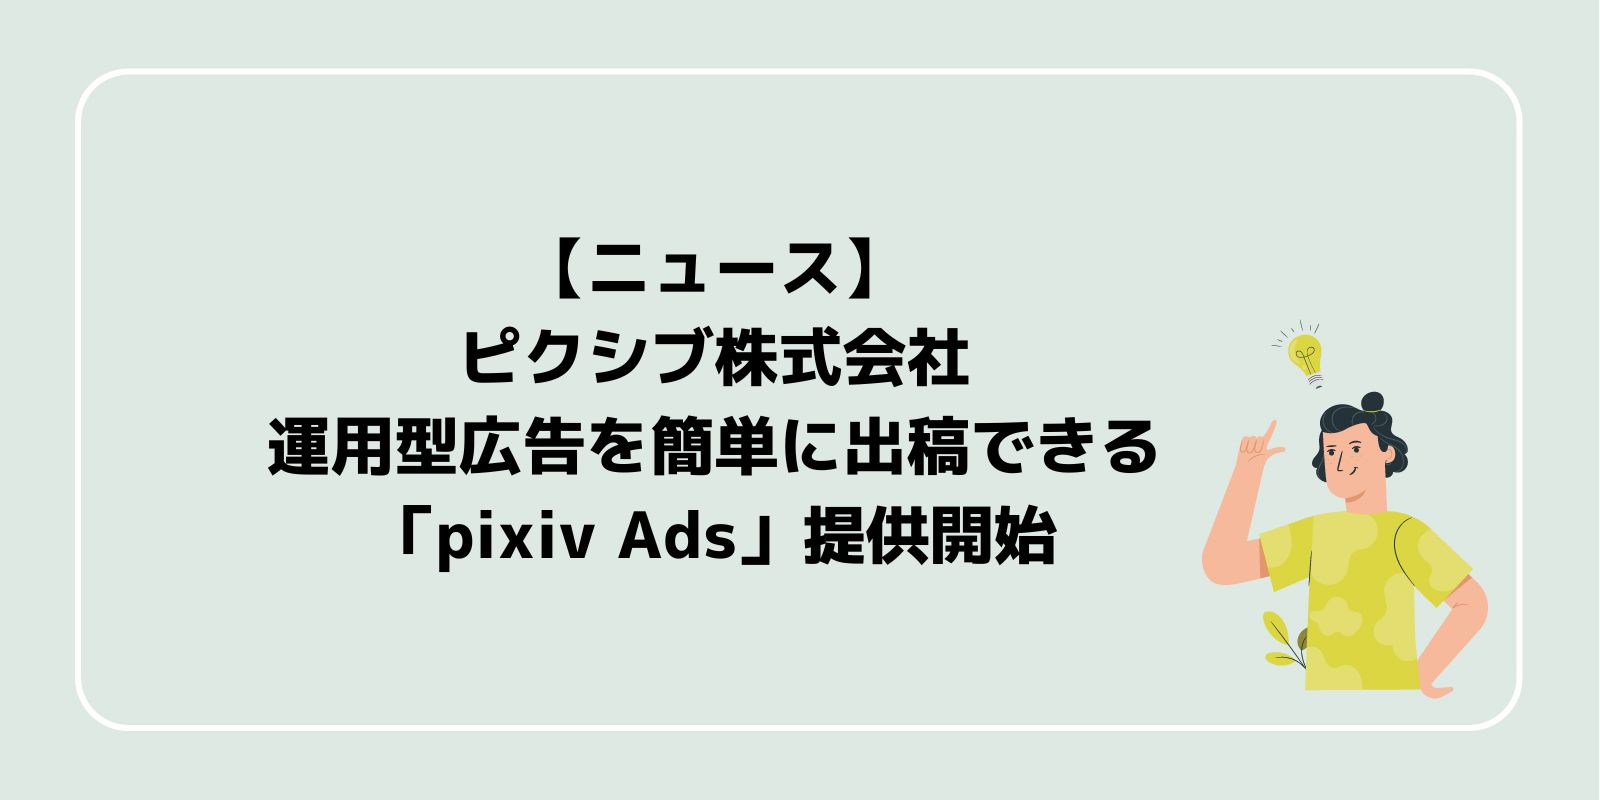 ピクシブ株式会社、運用型広告を簡単に出稿できる「pixiv Ads」提供開始